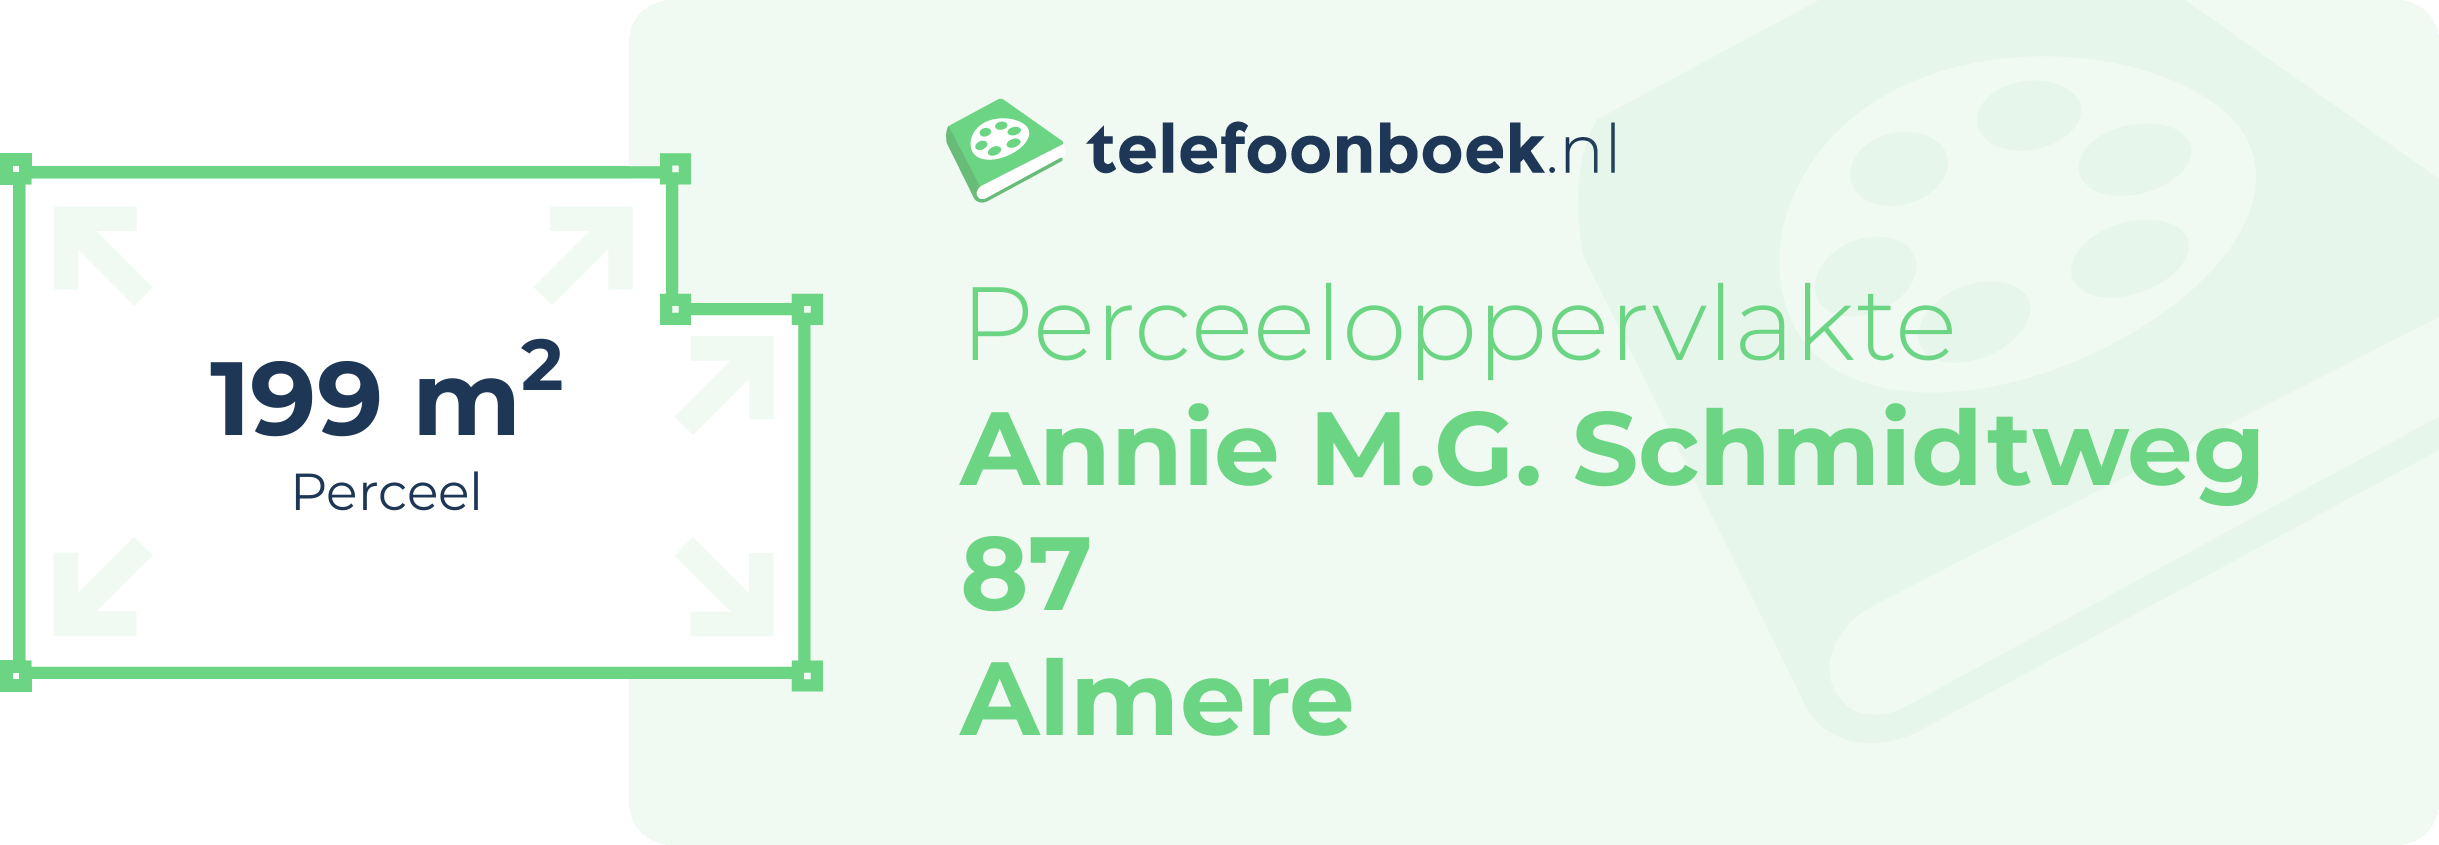 Perceeloppervlakte Annie M.G. Schmidtweg 87 Almere